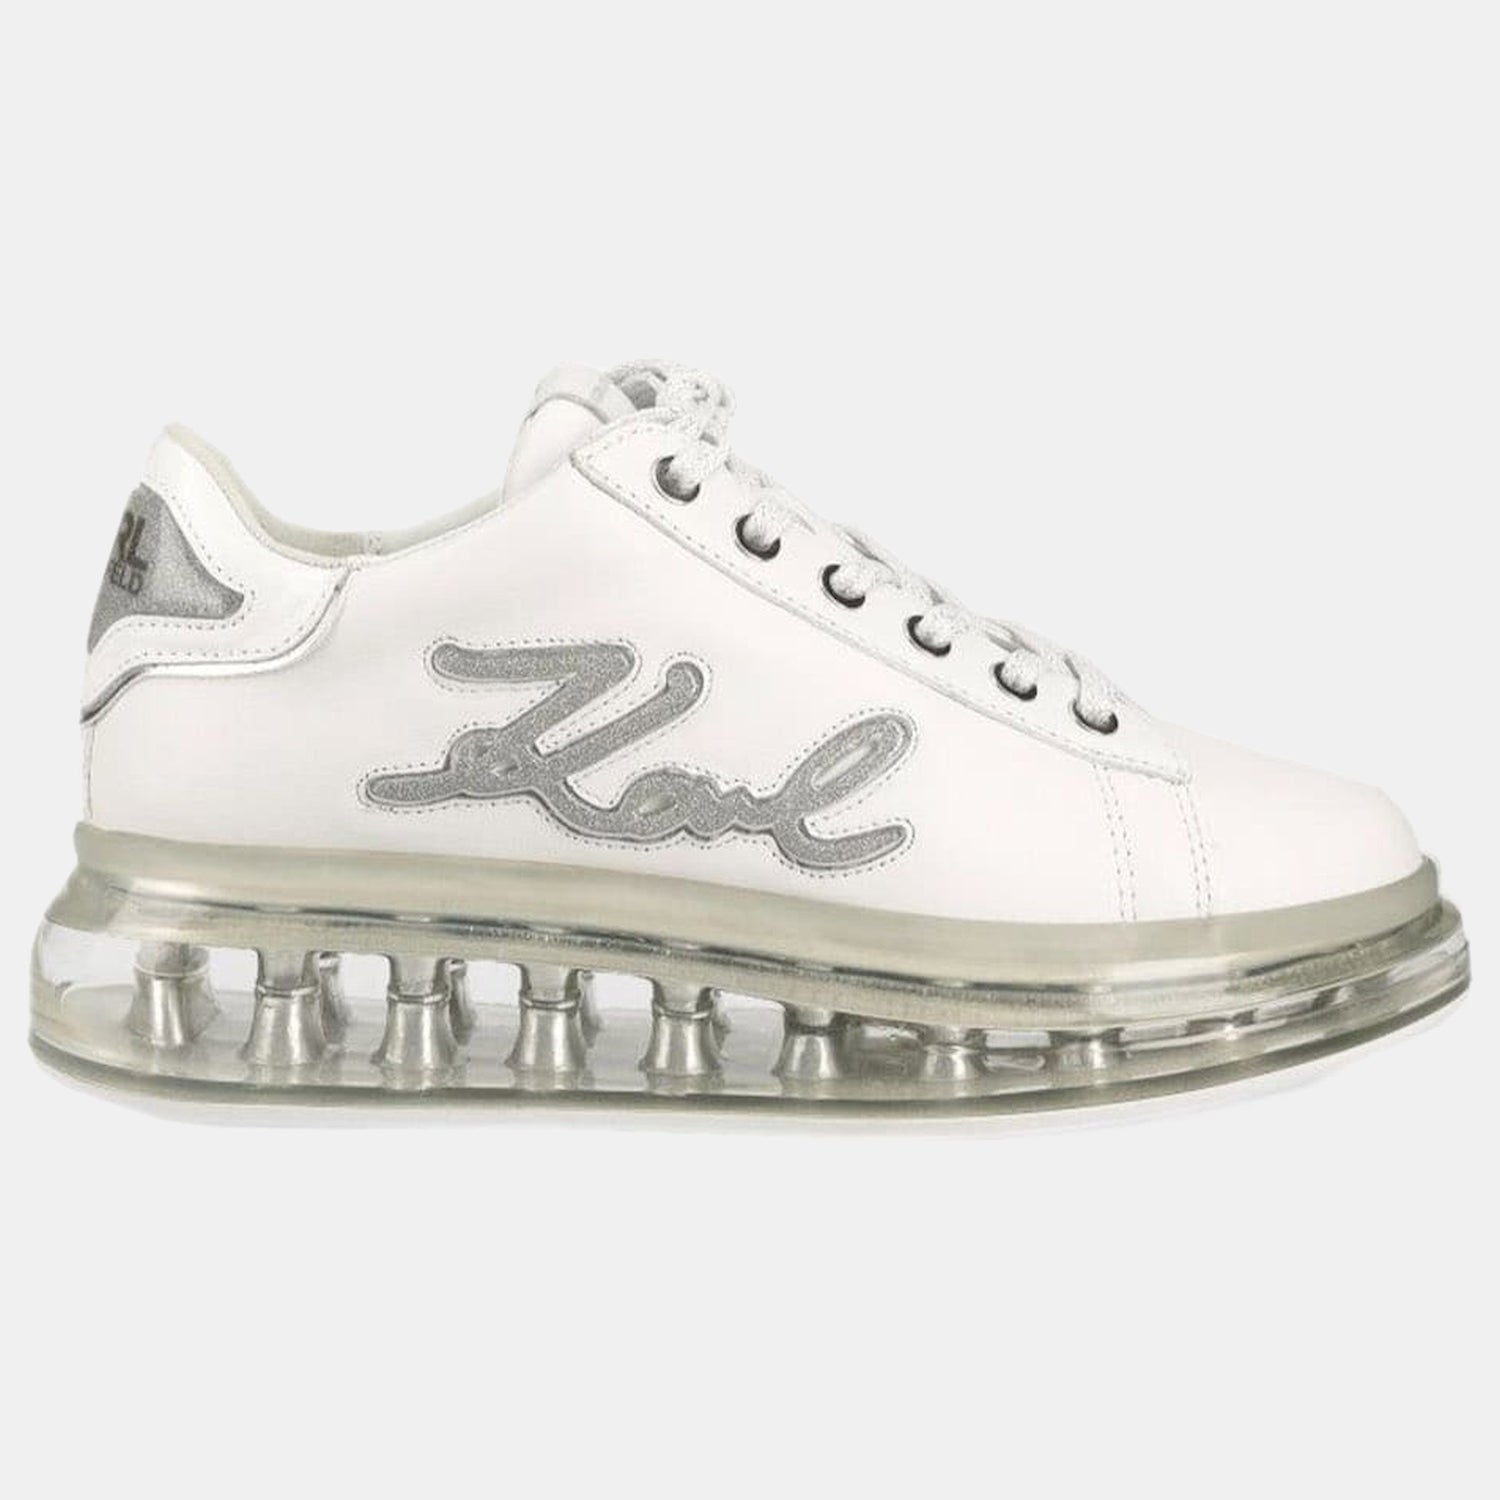 Karl Lagerfeld Sapatilhas Sneakers Shoes Kl62610f Whi Silver Branco Prateado_shot1